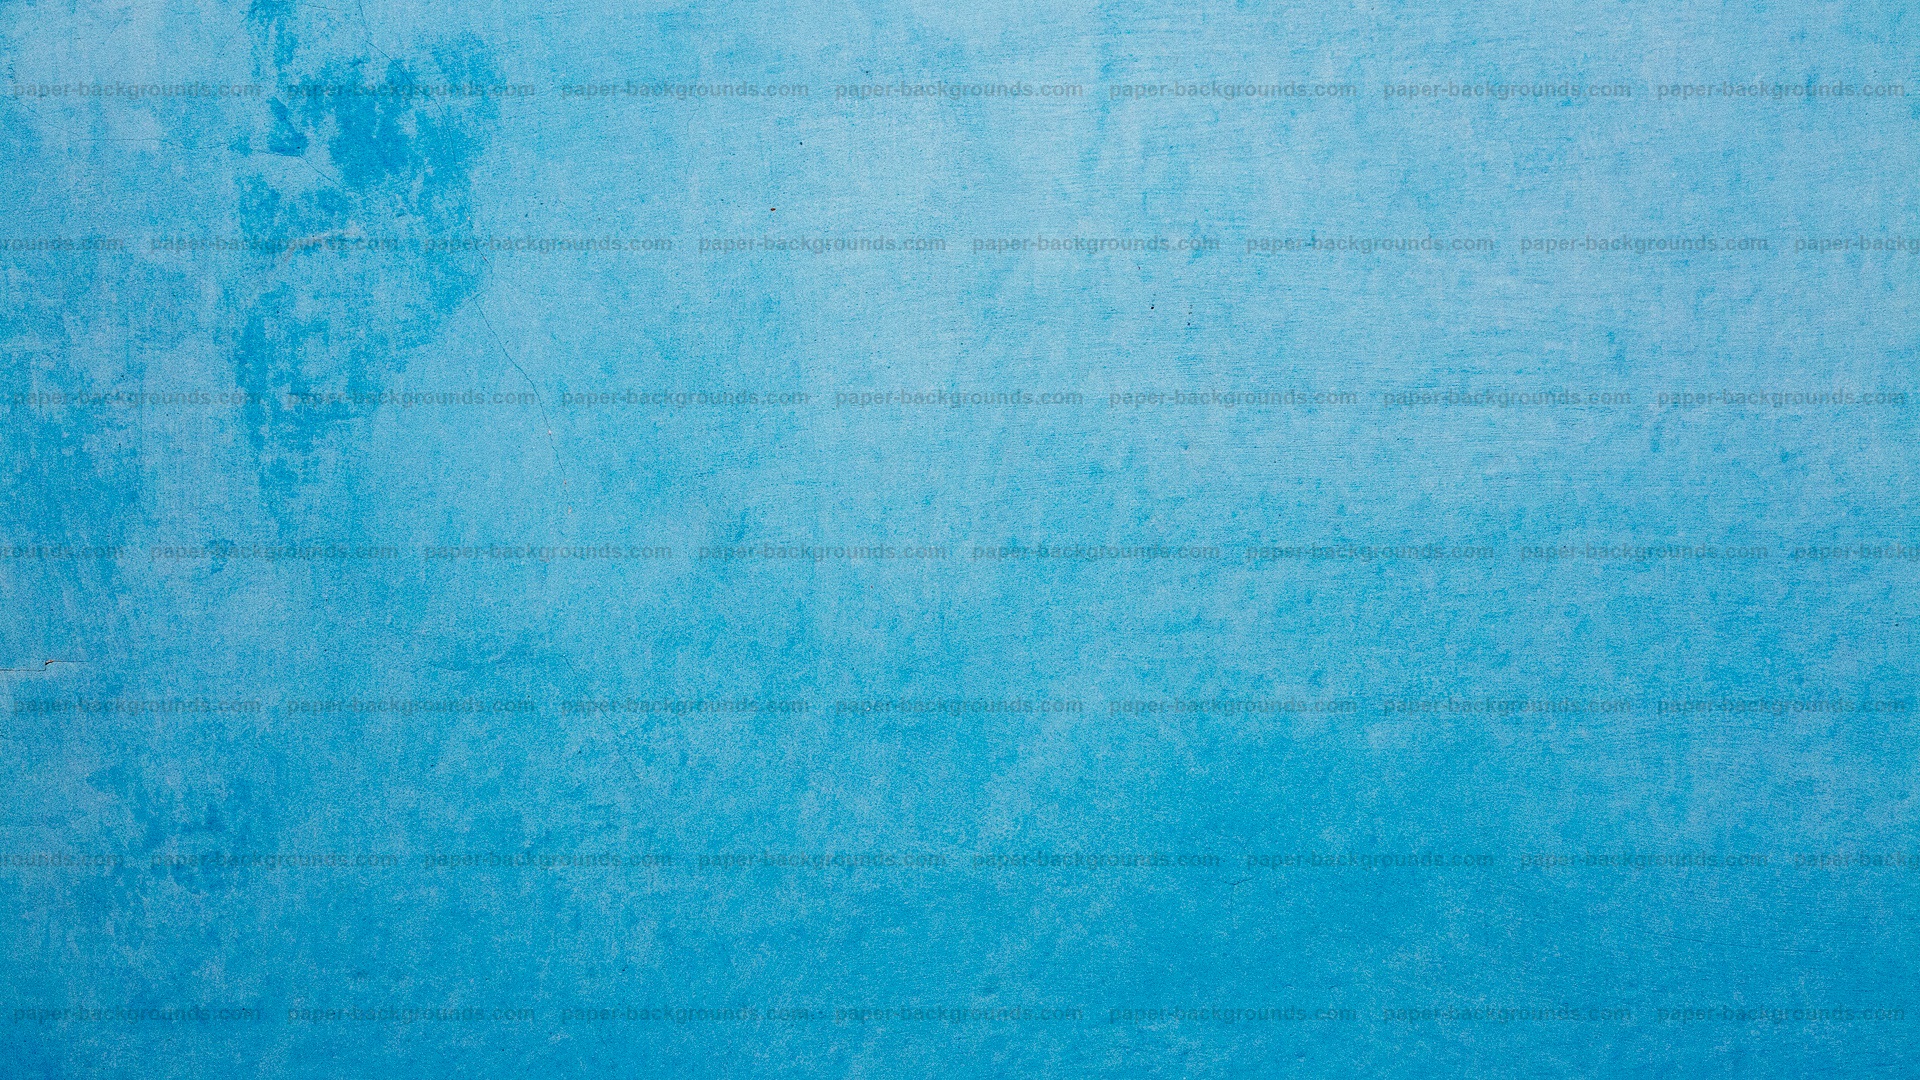 Hình nền tường xanh vintage sơn bóng đẹp mê ly để tô điểm không gian ảnh của bạn. Sống động và hấp dẫn, hình ảnh này sẽ đem lại cảm giác bình yên và thân thuộc.